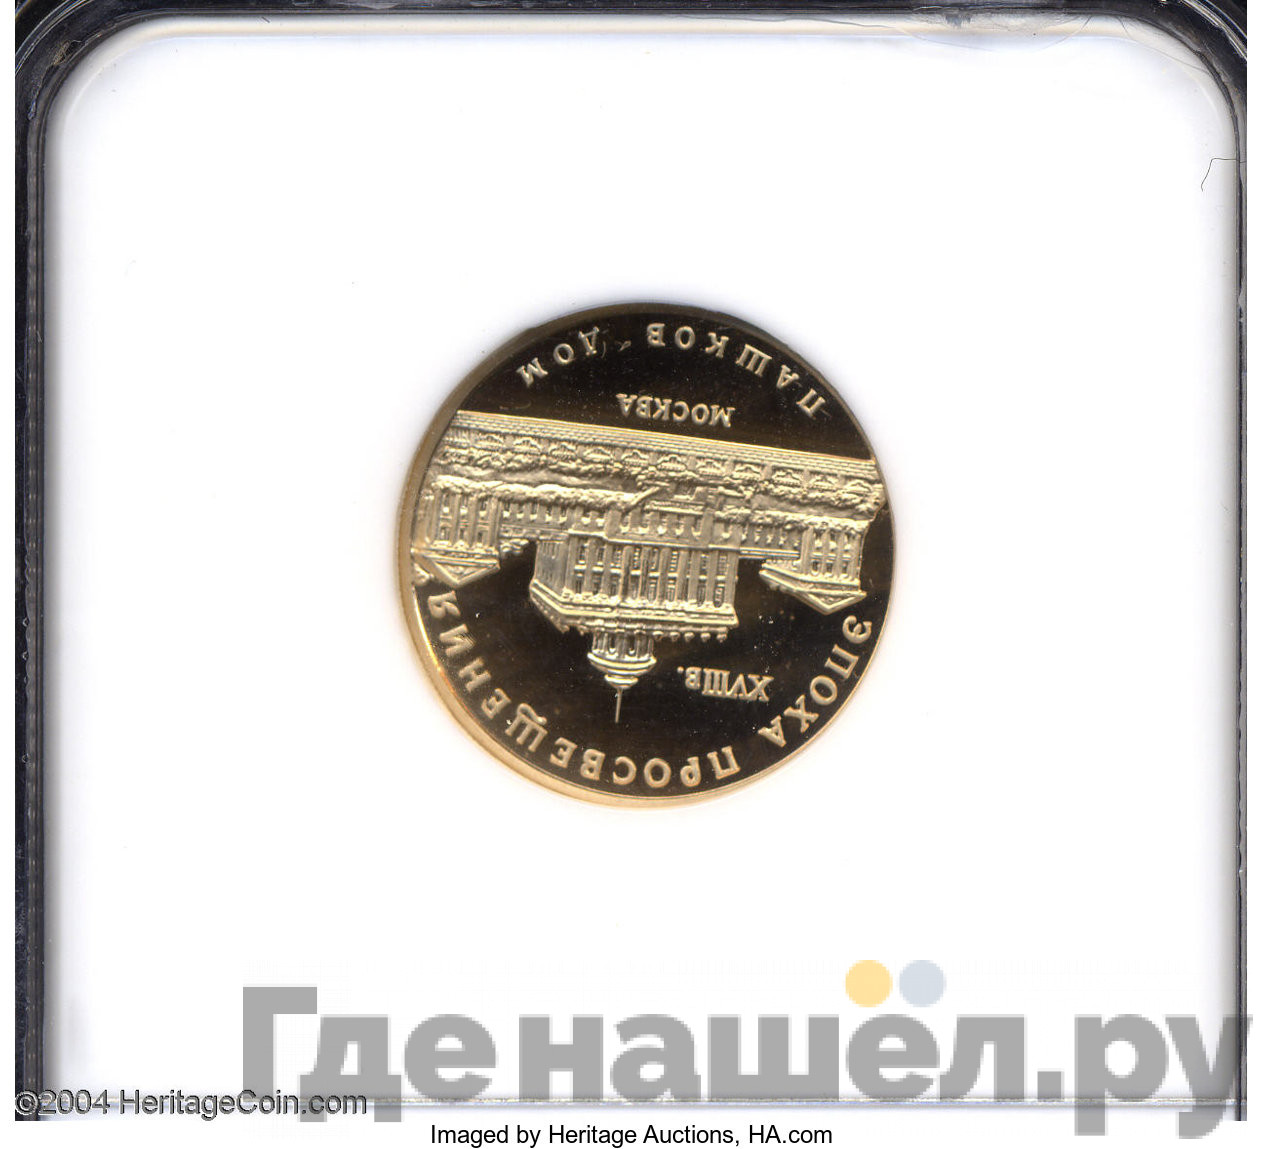 50 рублей 1992 года ММД Эпоха просвещения Пашков дом Москва